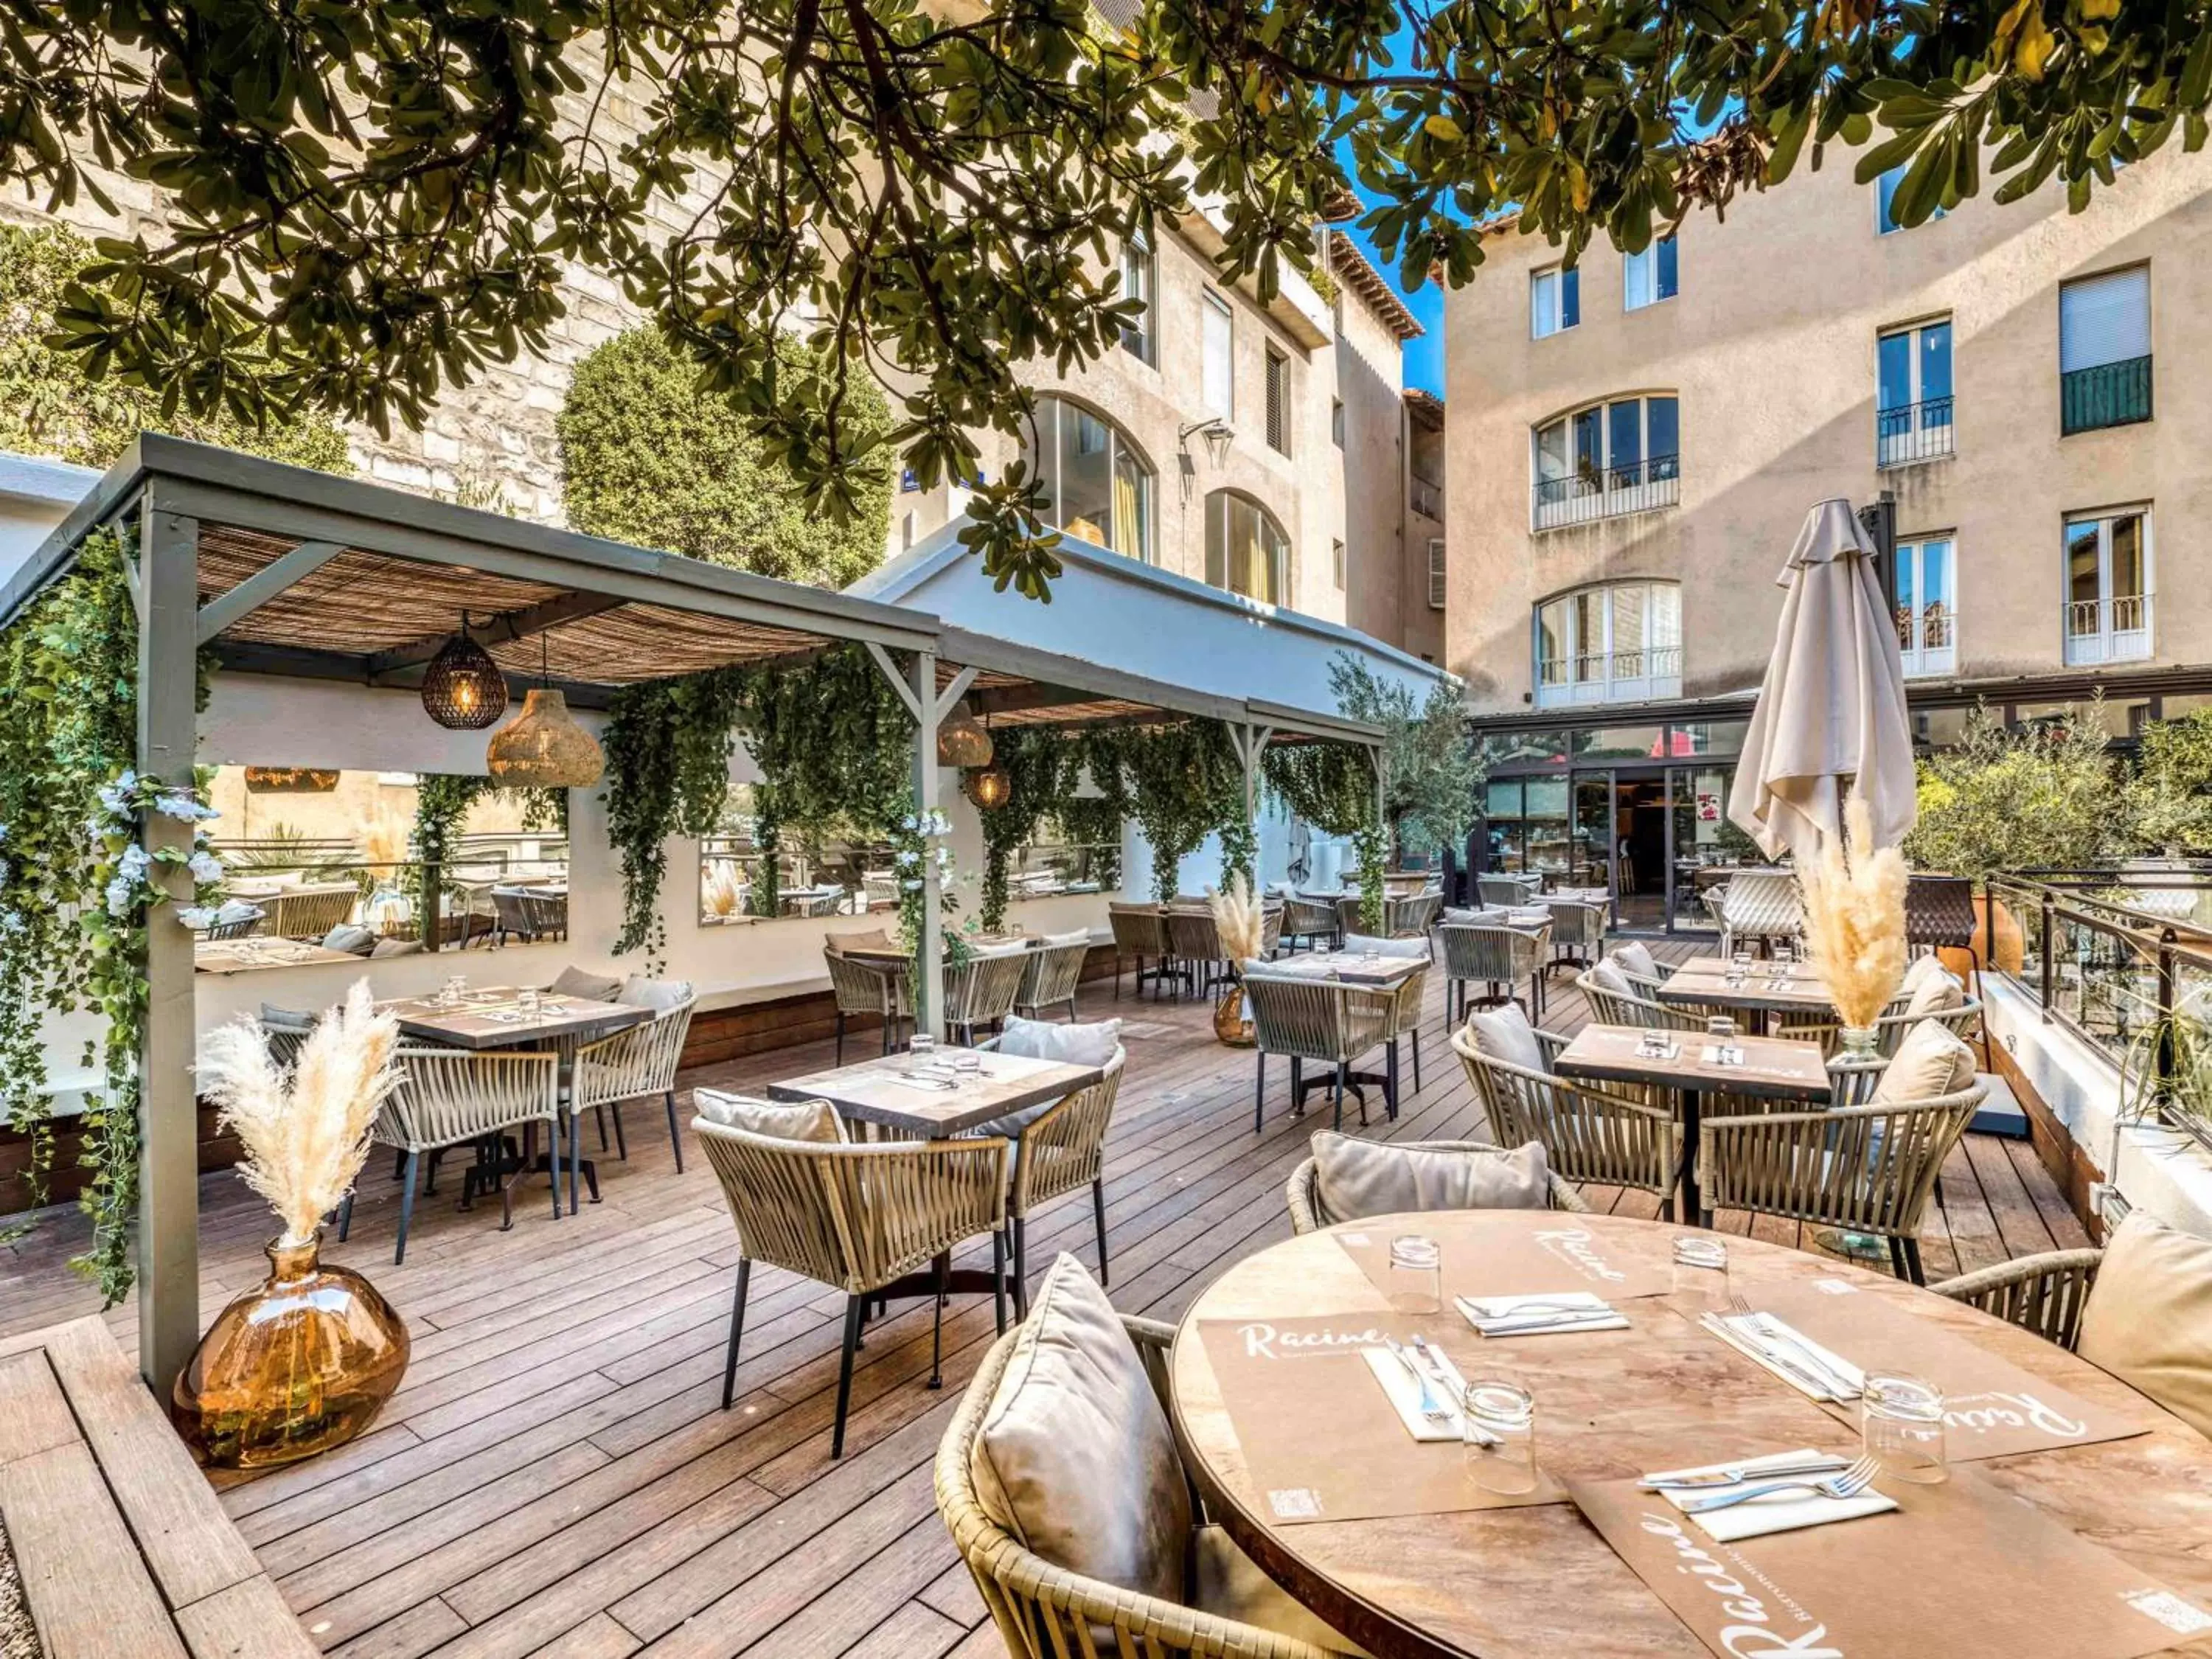 Property building, Restaurant/Places to Eat in Mercure Pont d’Avignon Centre